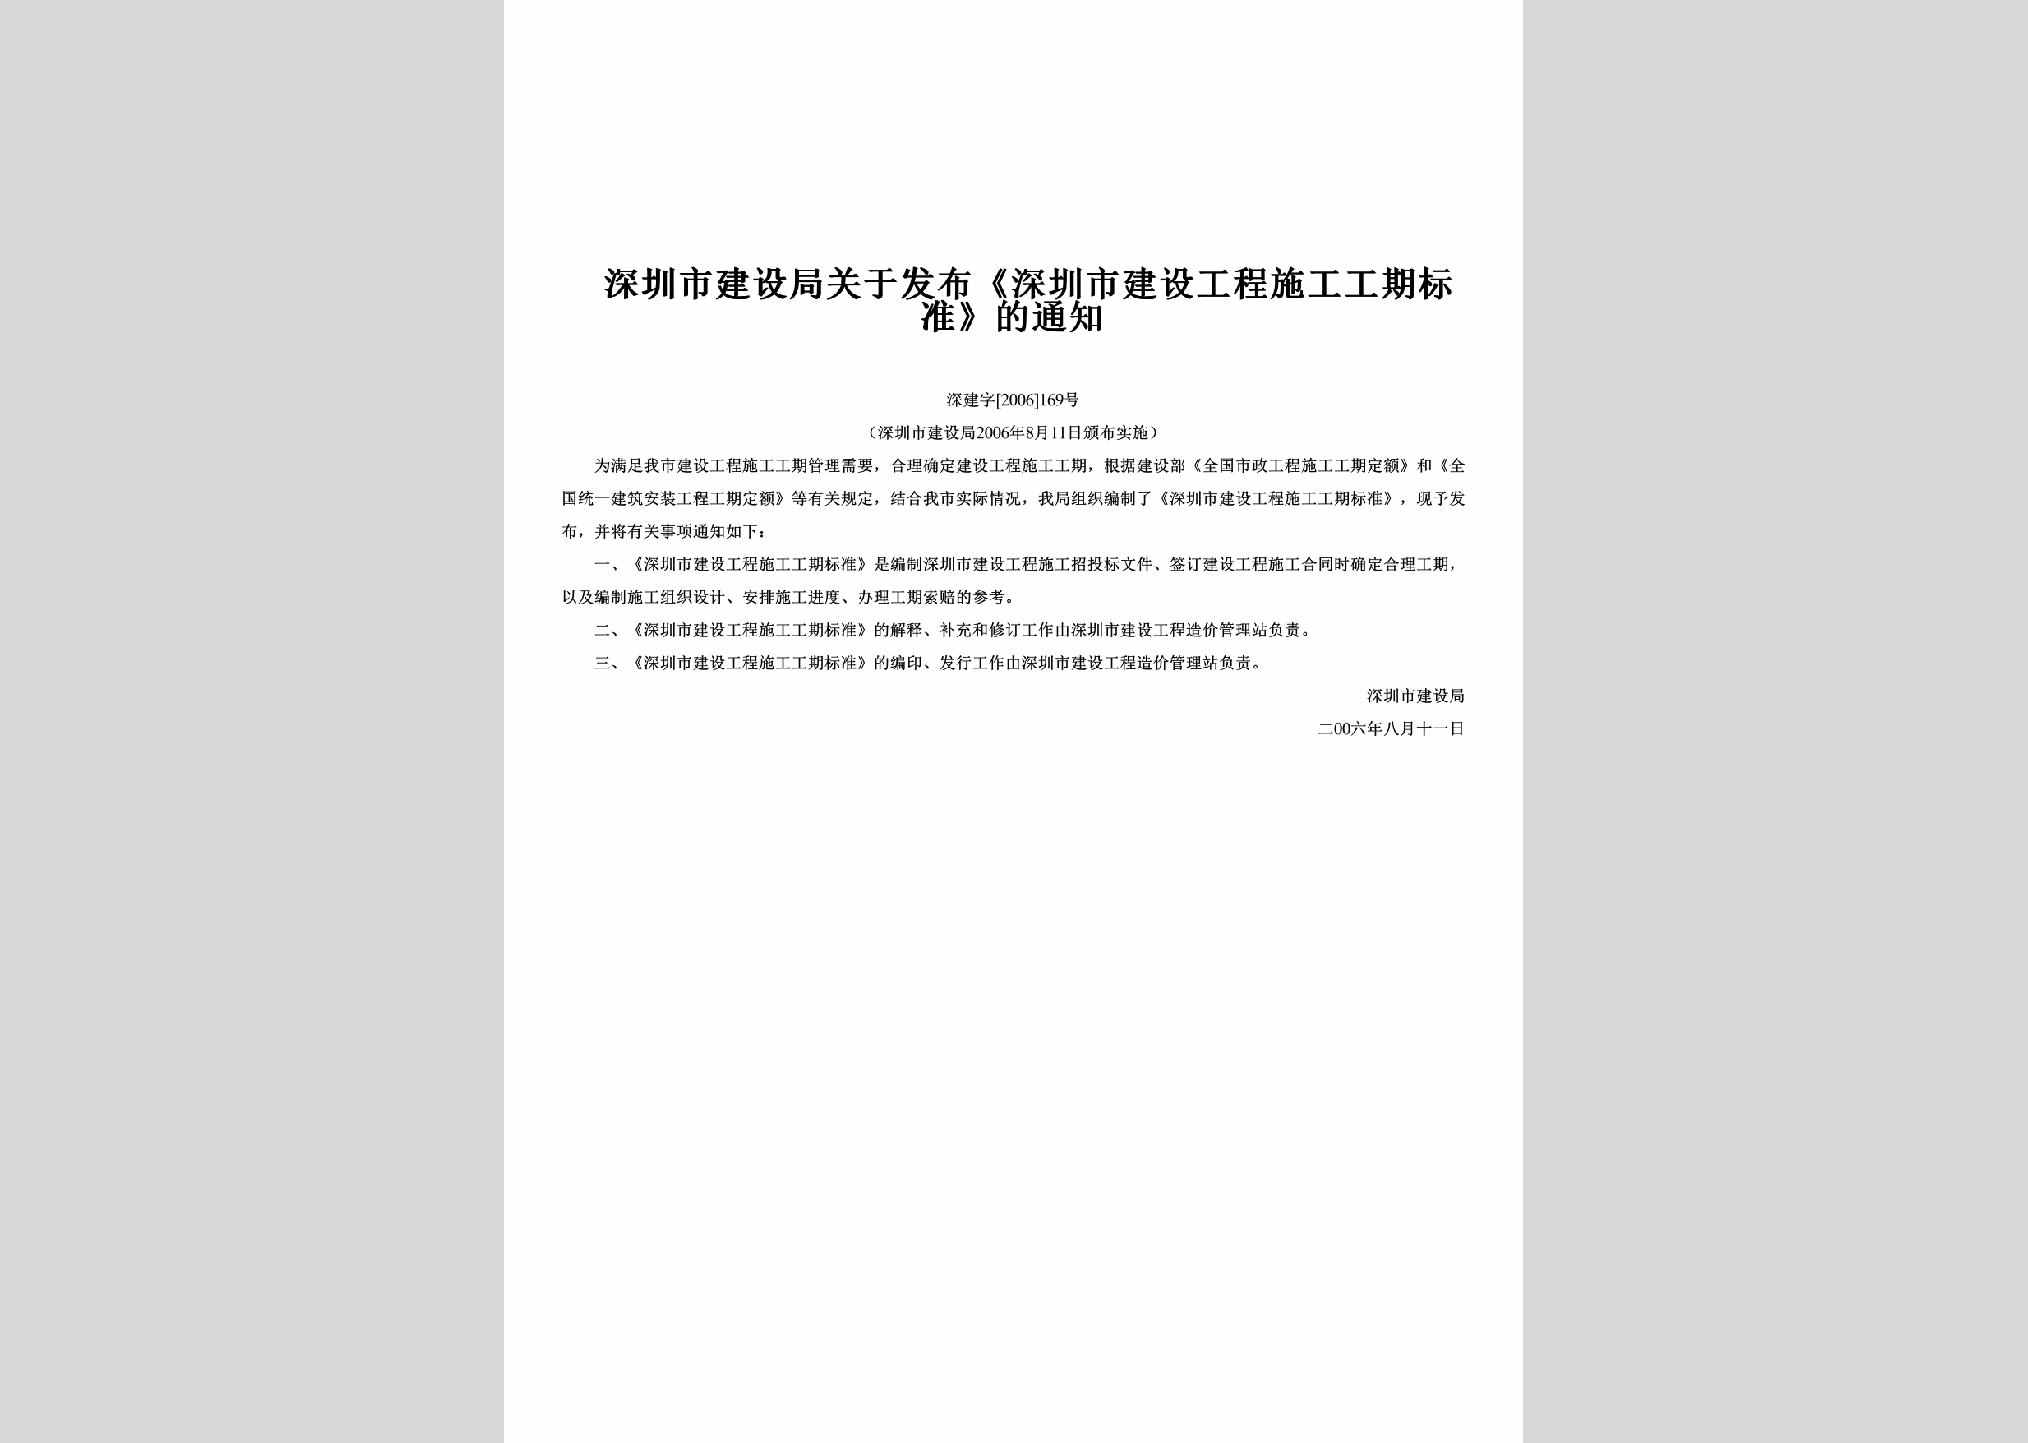 深建字[2006]169号：关于发布《深圳市建设工程施工工期标准》的通知